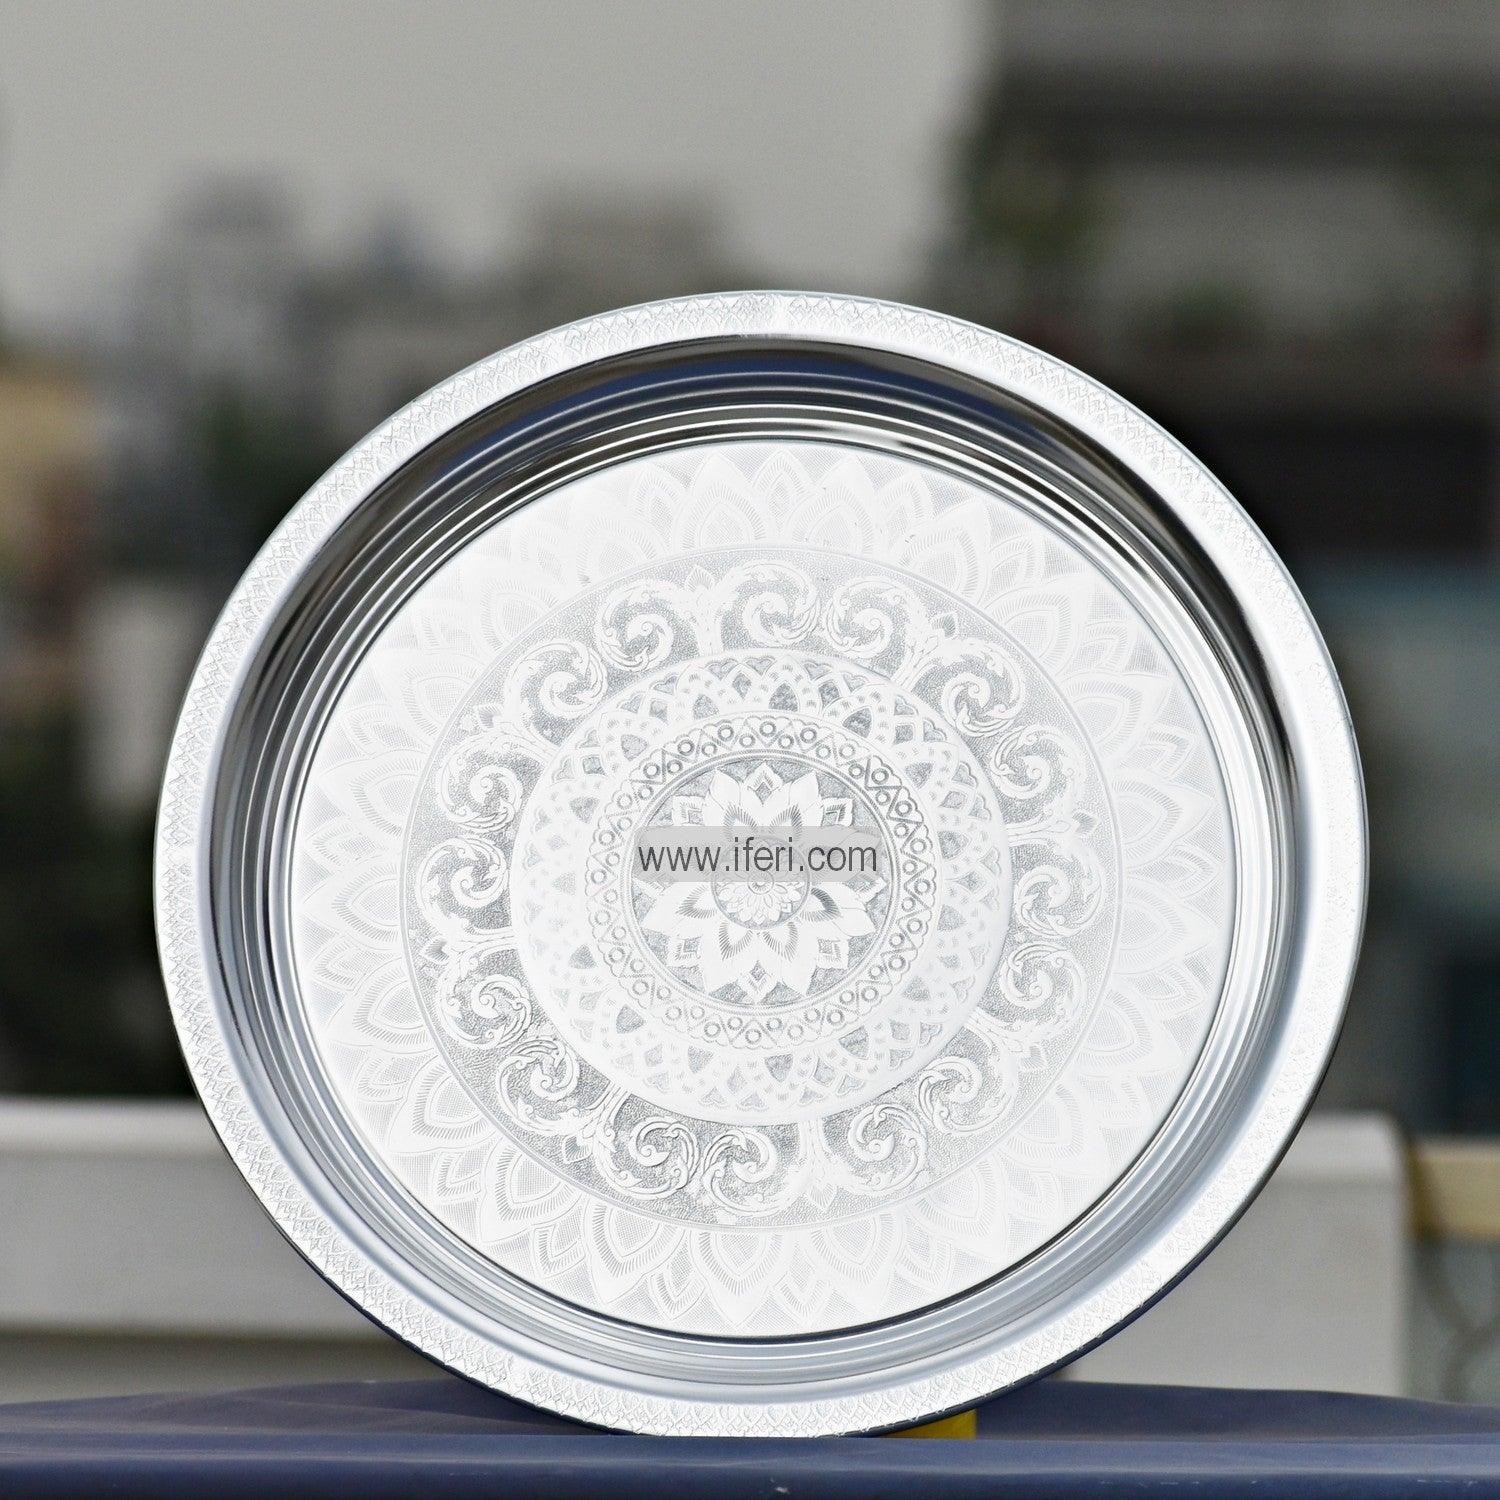 30cm  Vintage Aluminum Food Plate/Thali UT4121 Price in Bangladesh - iferi.com